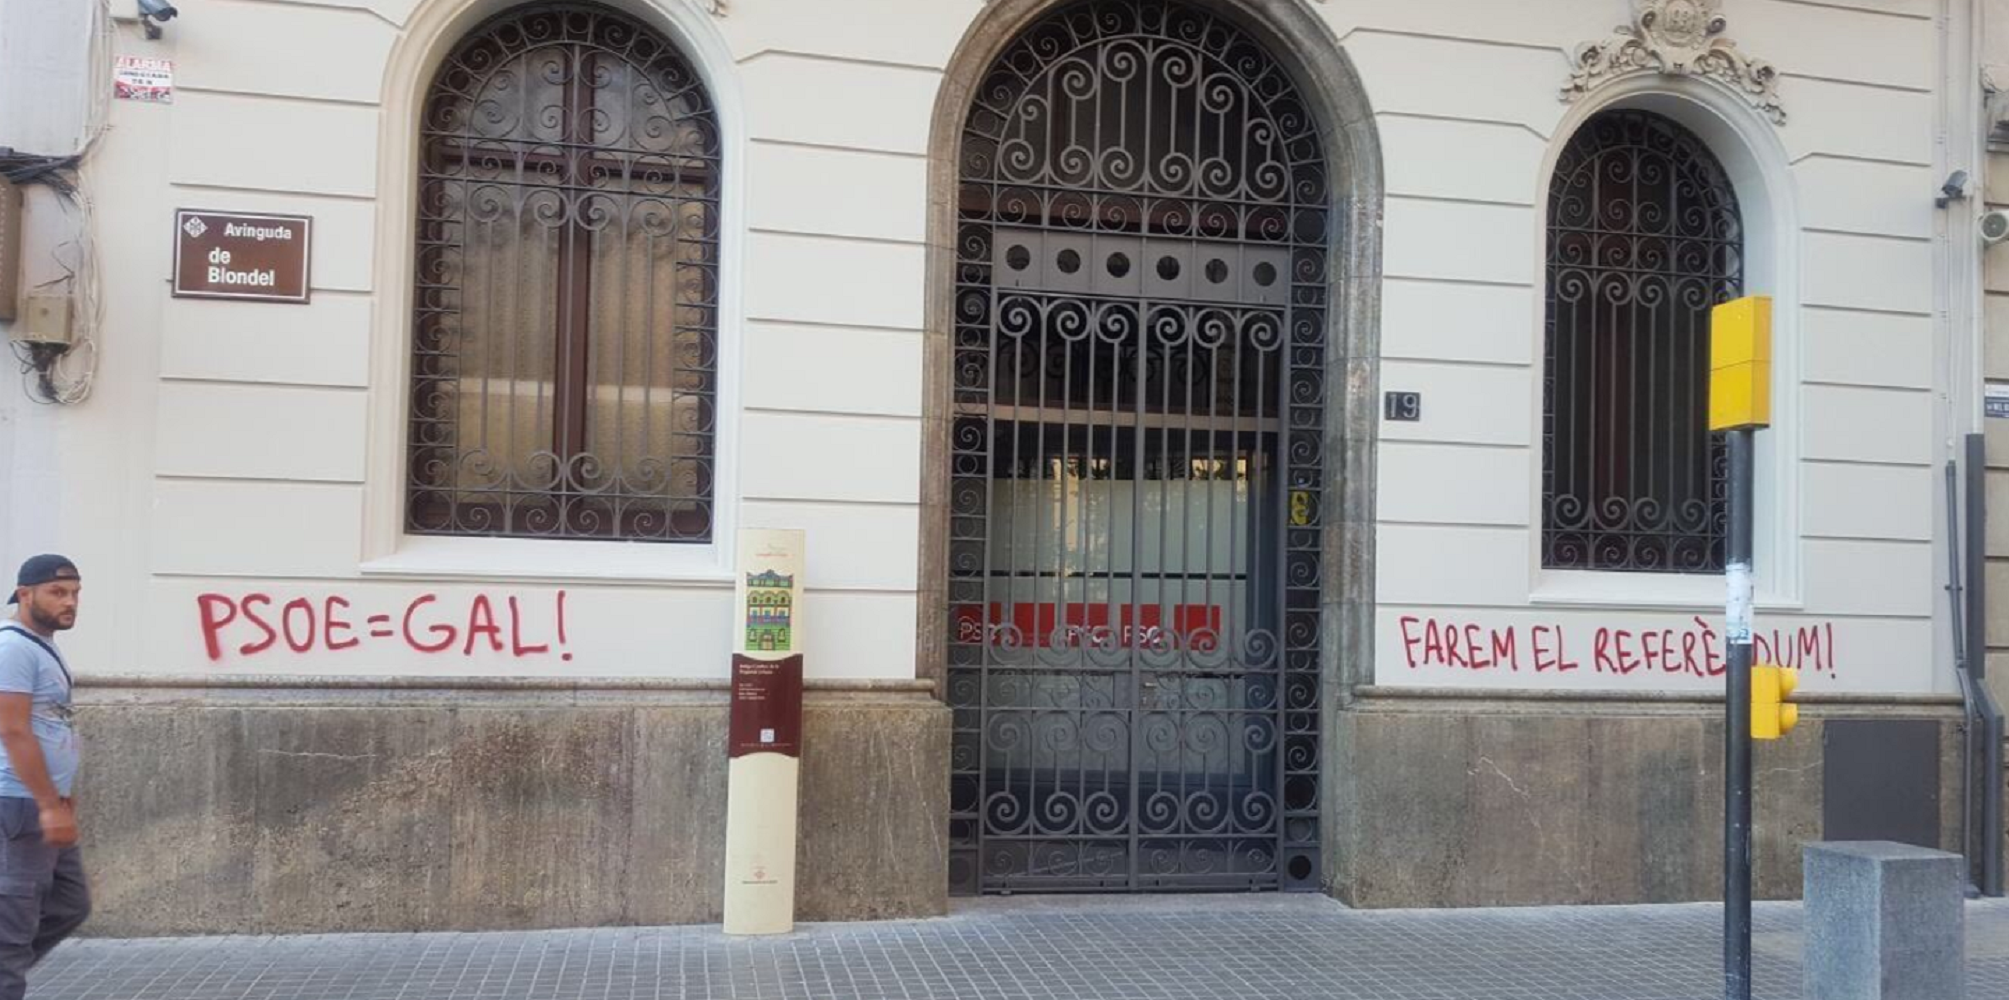 La seu del PSC a Lleida apareix amb pintades a favor del referèndum